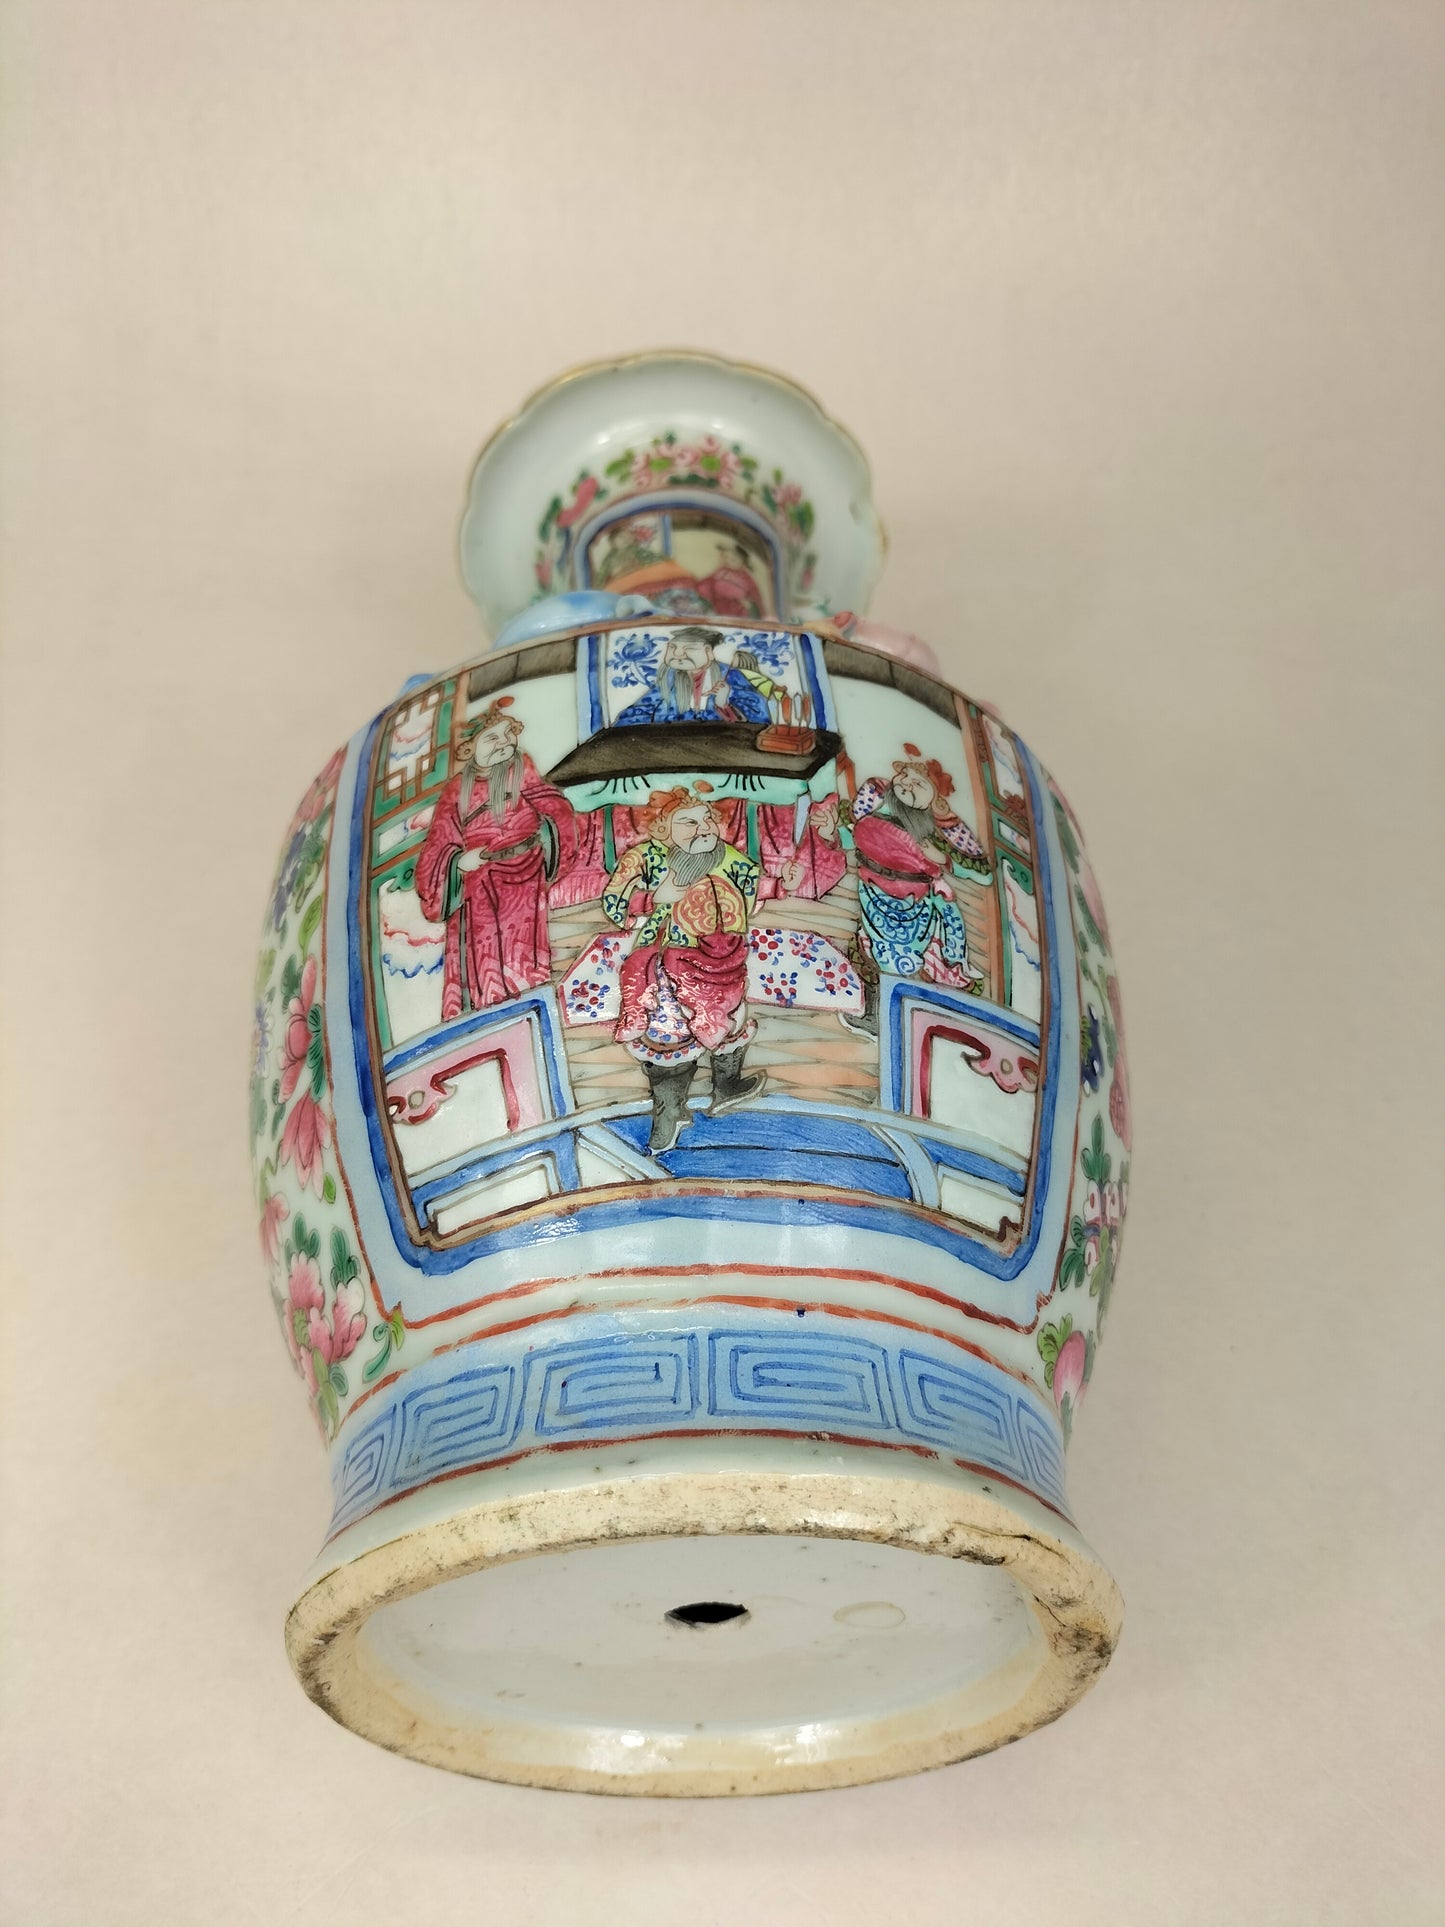 Chiếc bình cổ của Trung Quốc được trang trí với khung cảnh Hoàng gia // Nhà Thanh - thế kỷ 19